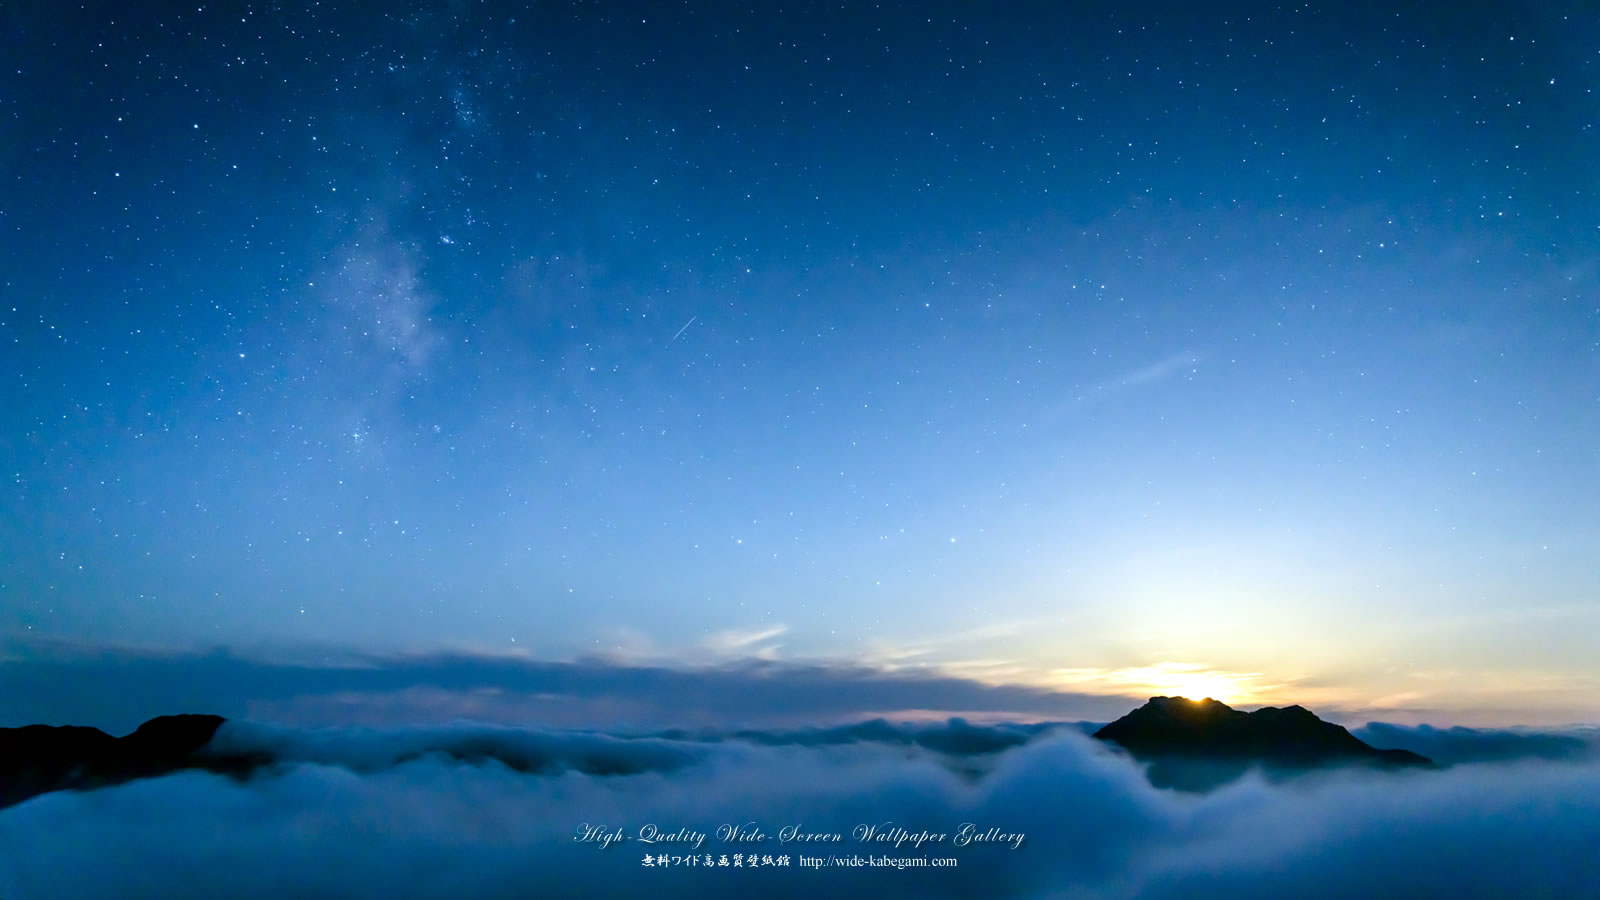 自然風景のワイド壁紙 1600x900 星瞬く雲海の朝 1 星景写真 無料ワイド高画質壁紙館